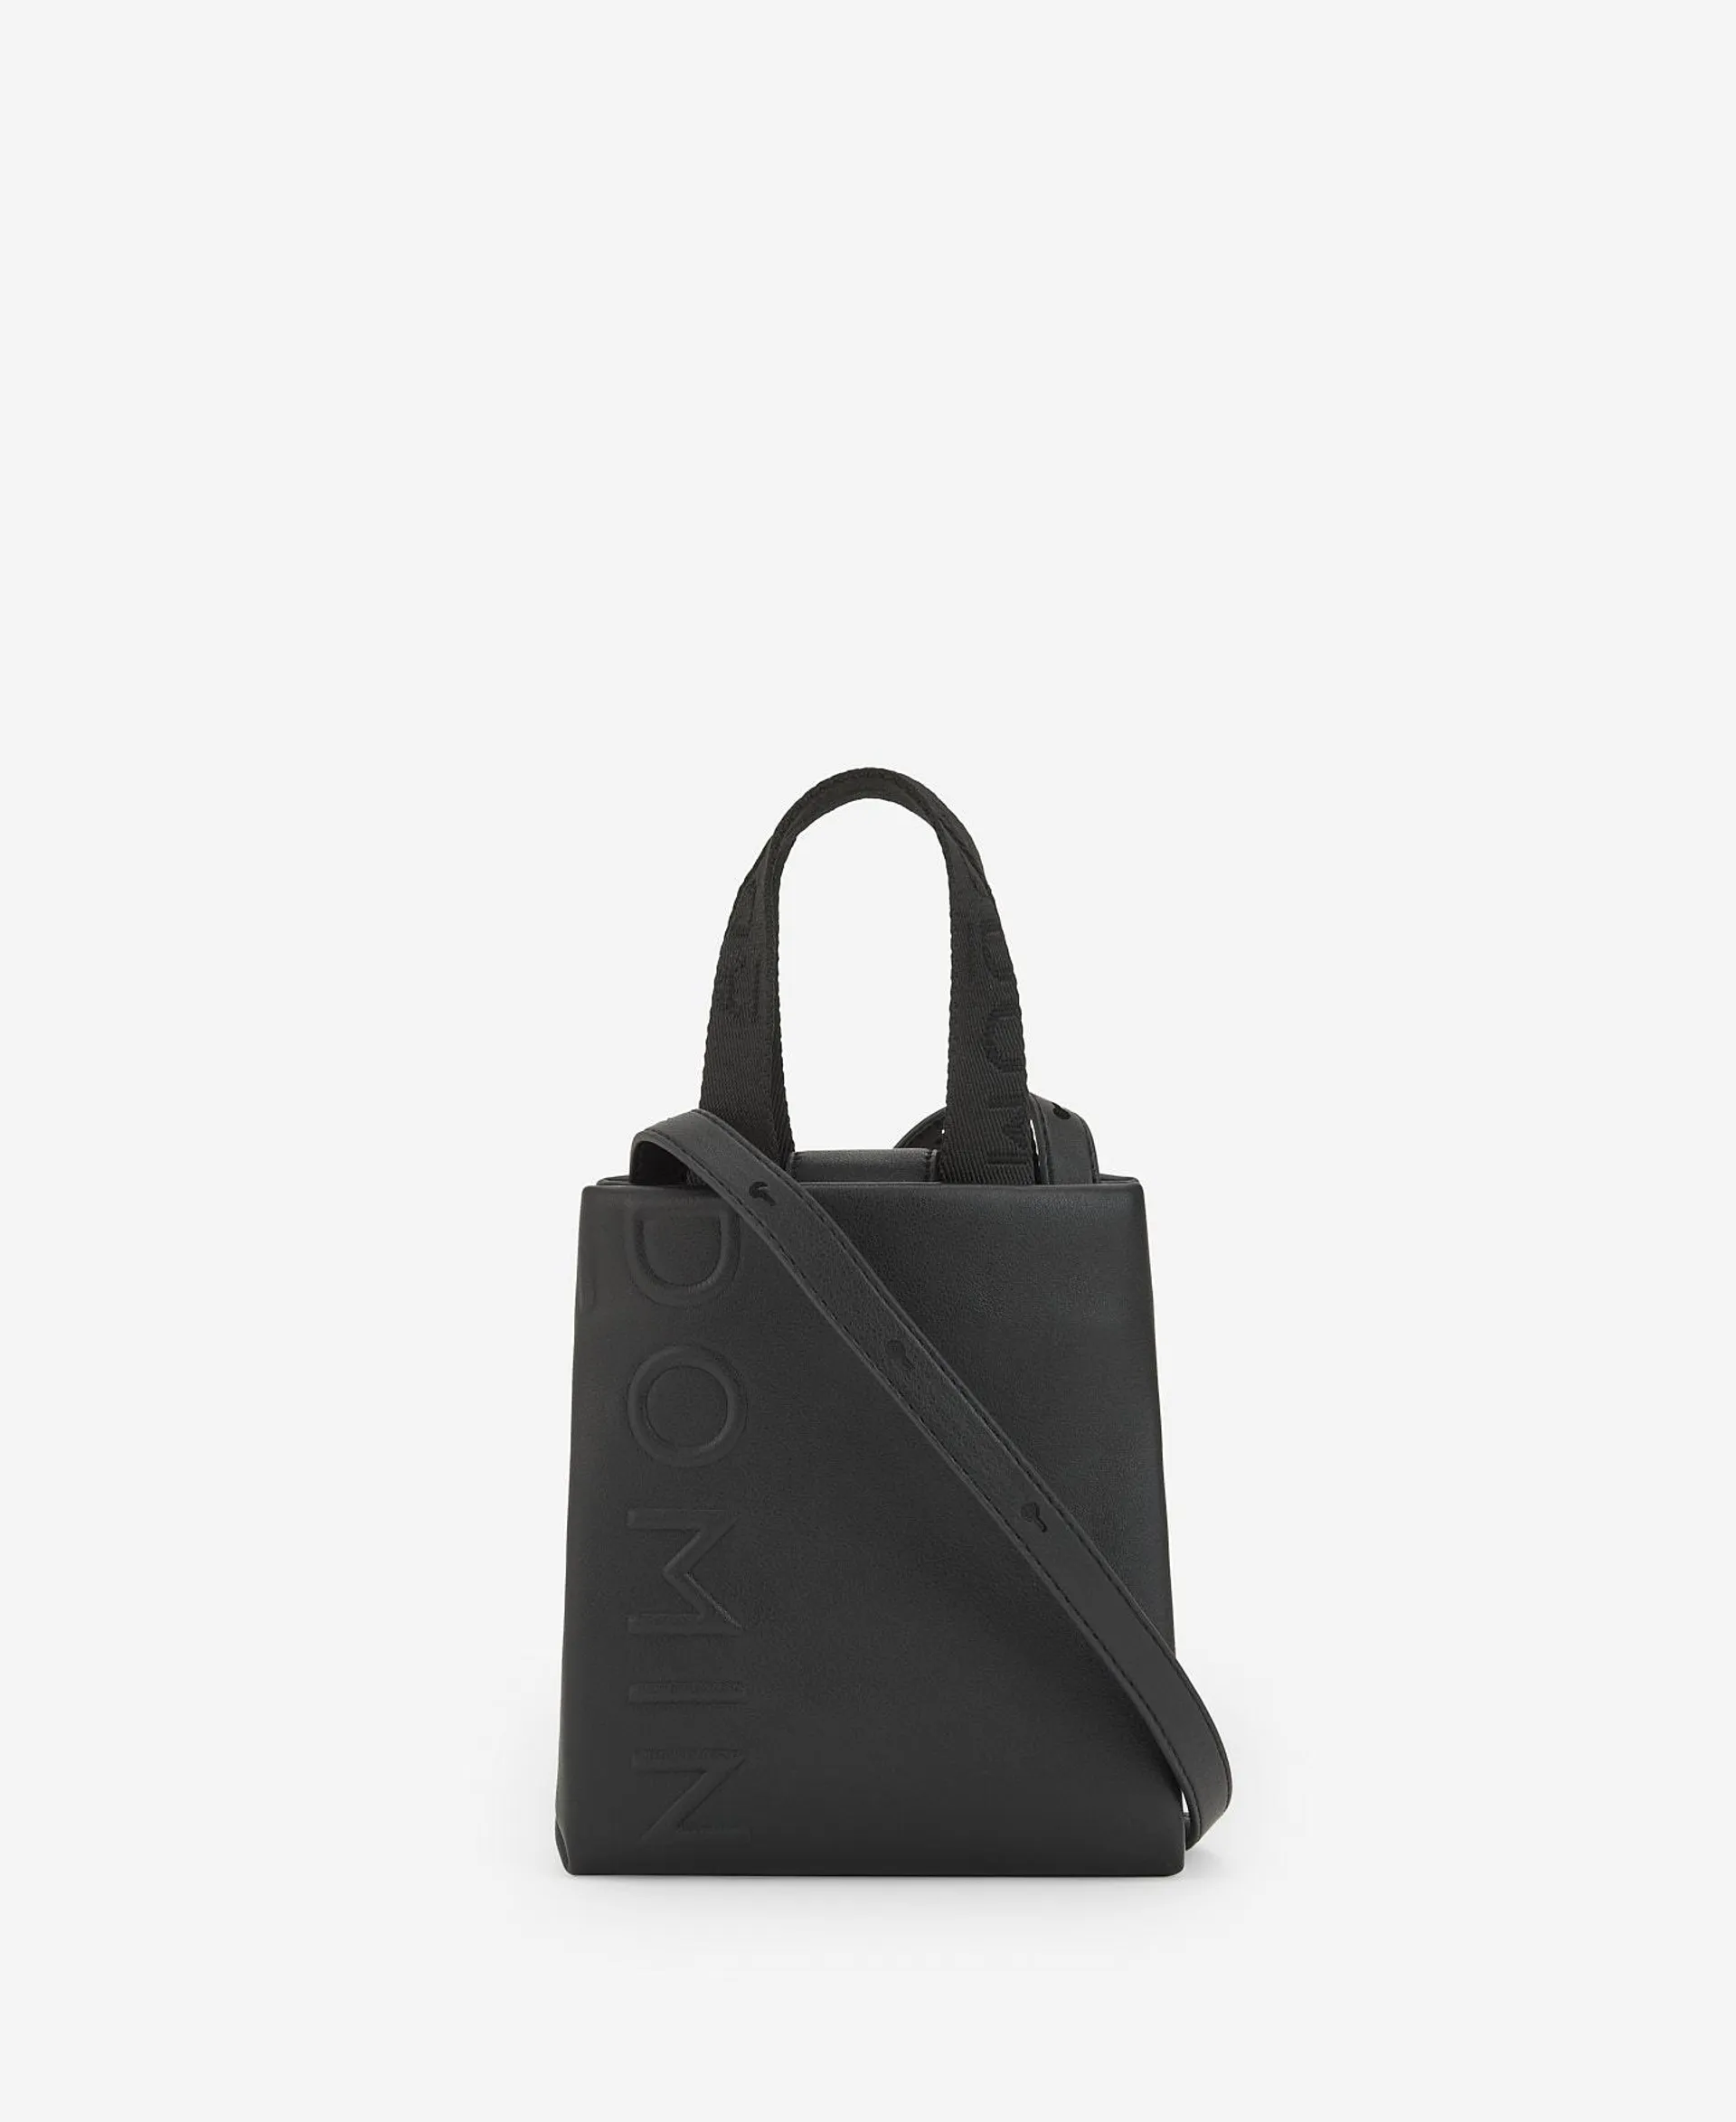 Small black shopper bag for women